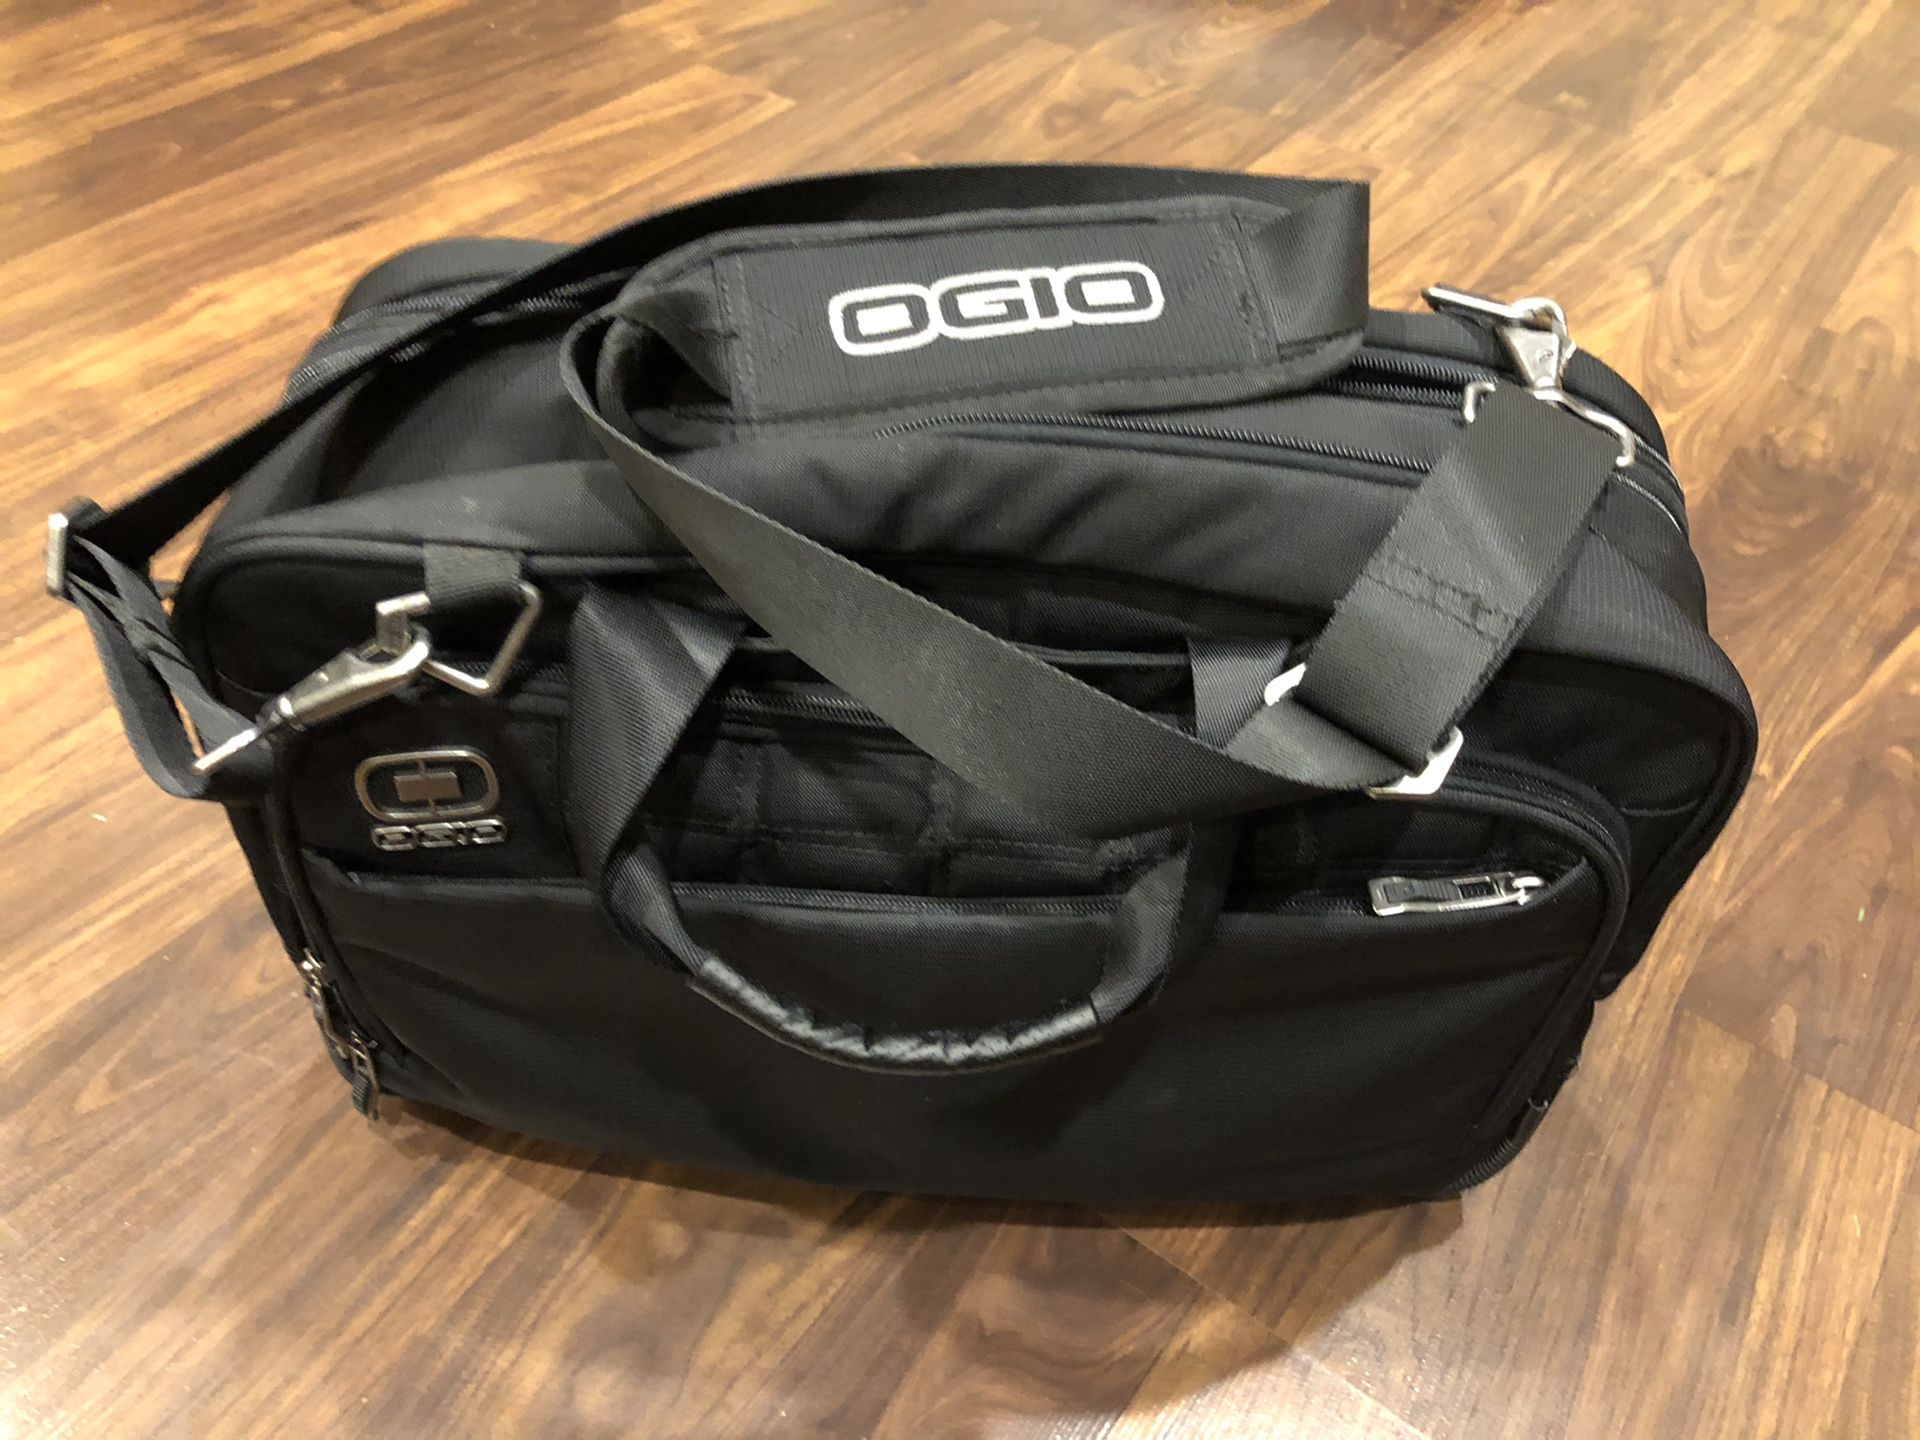 Ogio Travel Bag